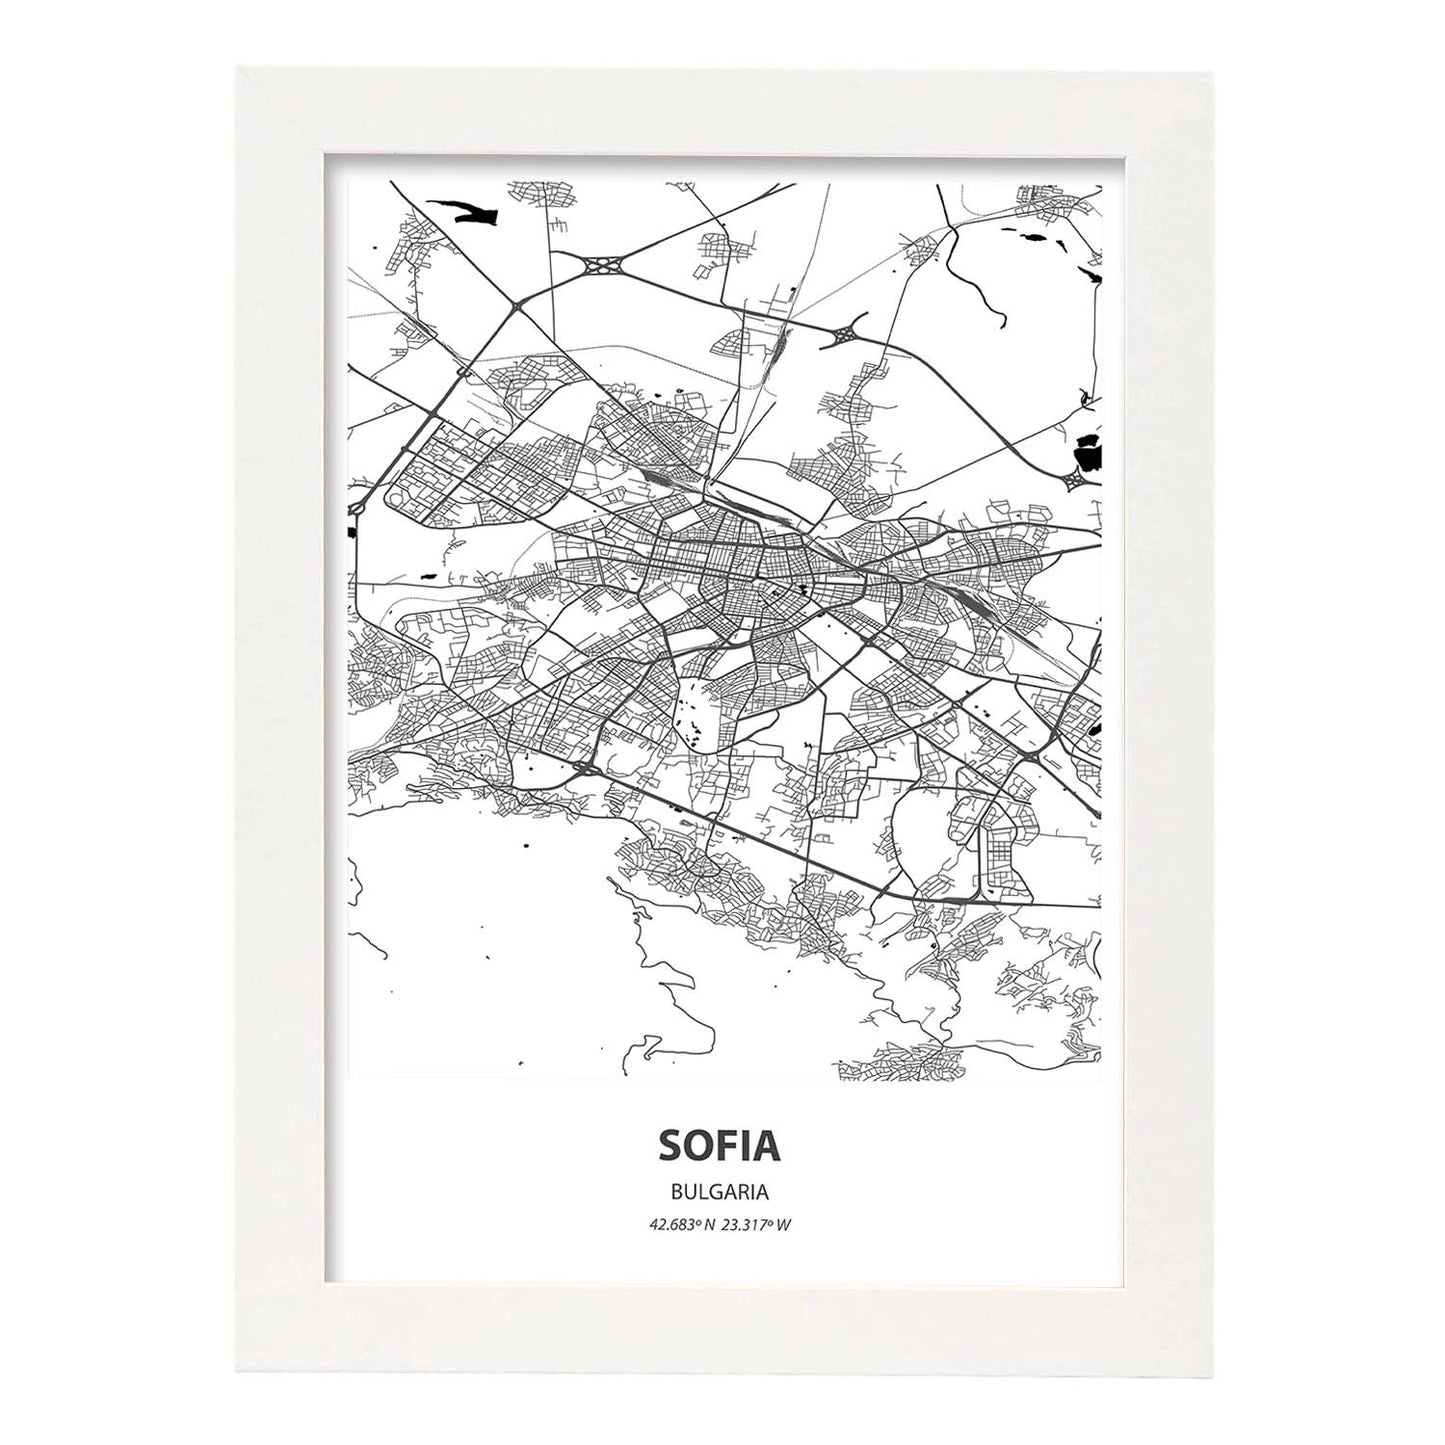 Poster con mapa de Sofia - Bulgaria. Láminas de ciudades de Europa con mares y ríos en color negro.-Artwork-Nacnic-A3-Marco Blanco-Nacnic Estudio SL